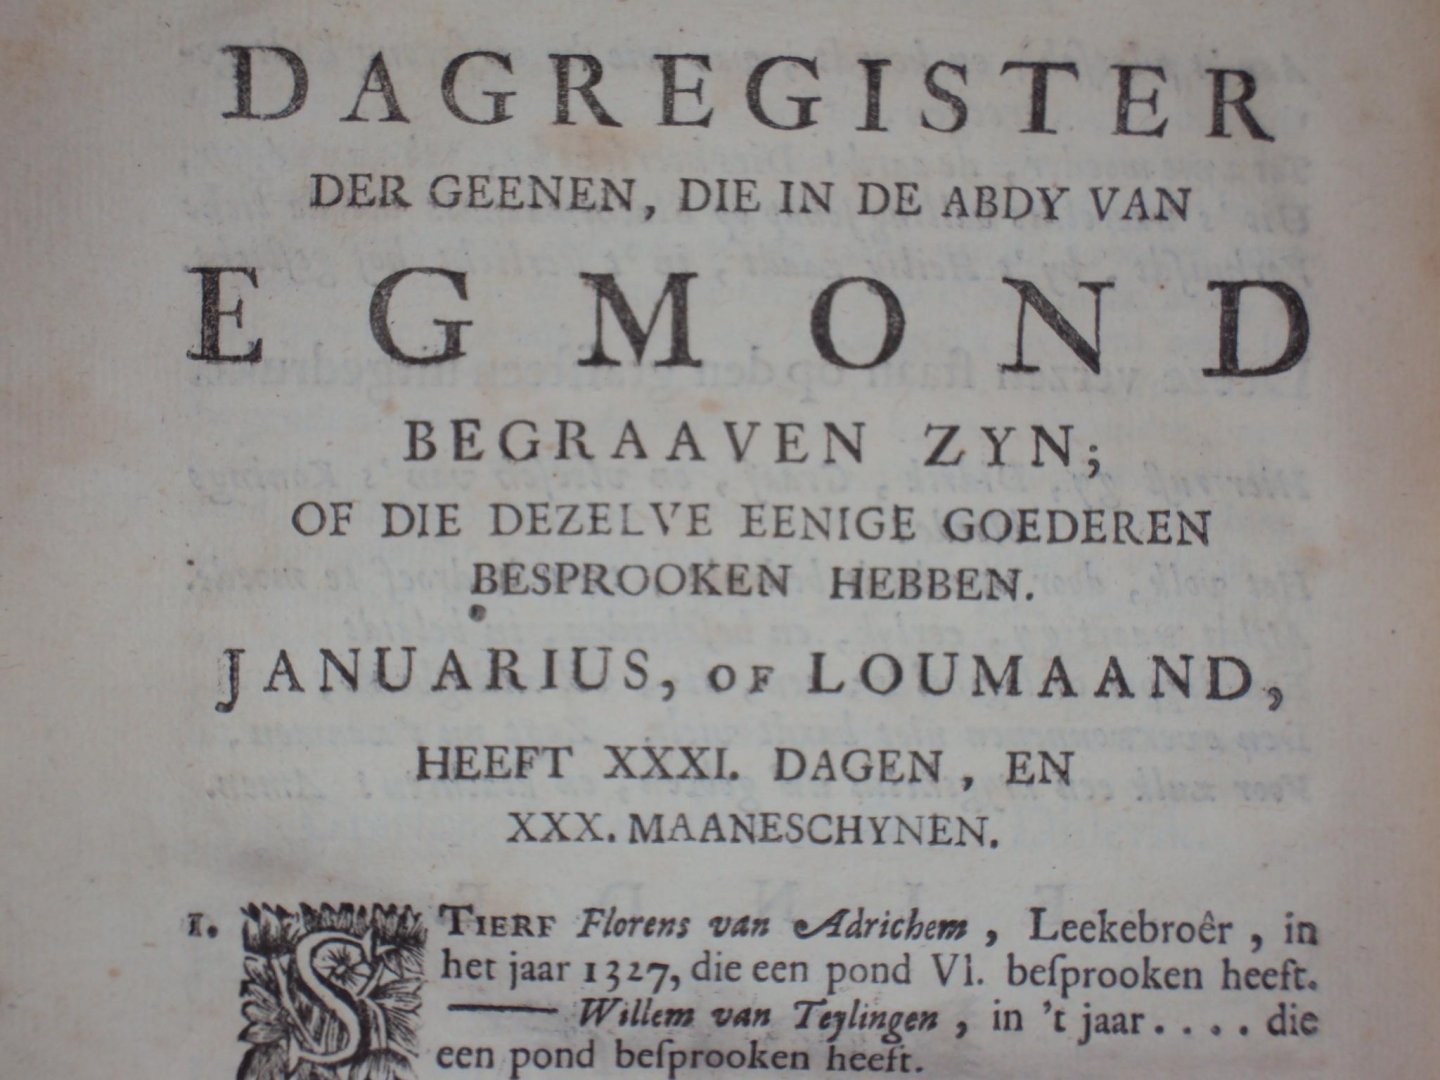 Jan van Leyden - Kronyk van Egmond, of jaarboeken der vorstelyke abten van Egmond